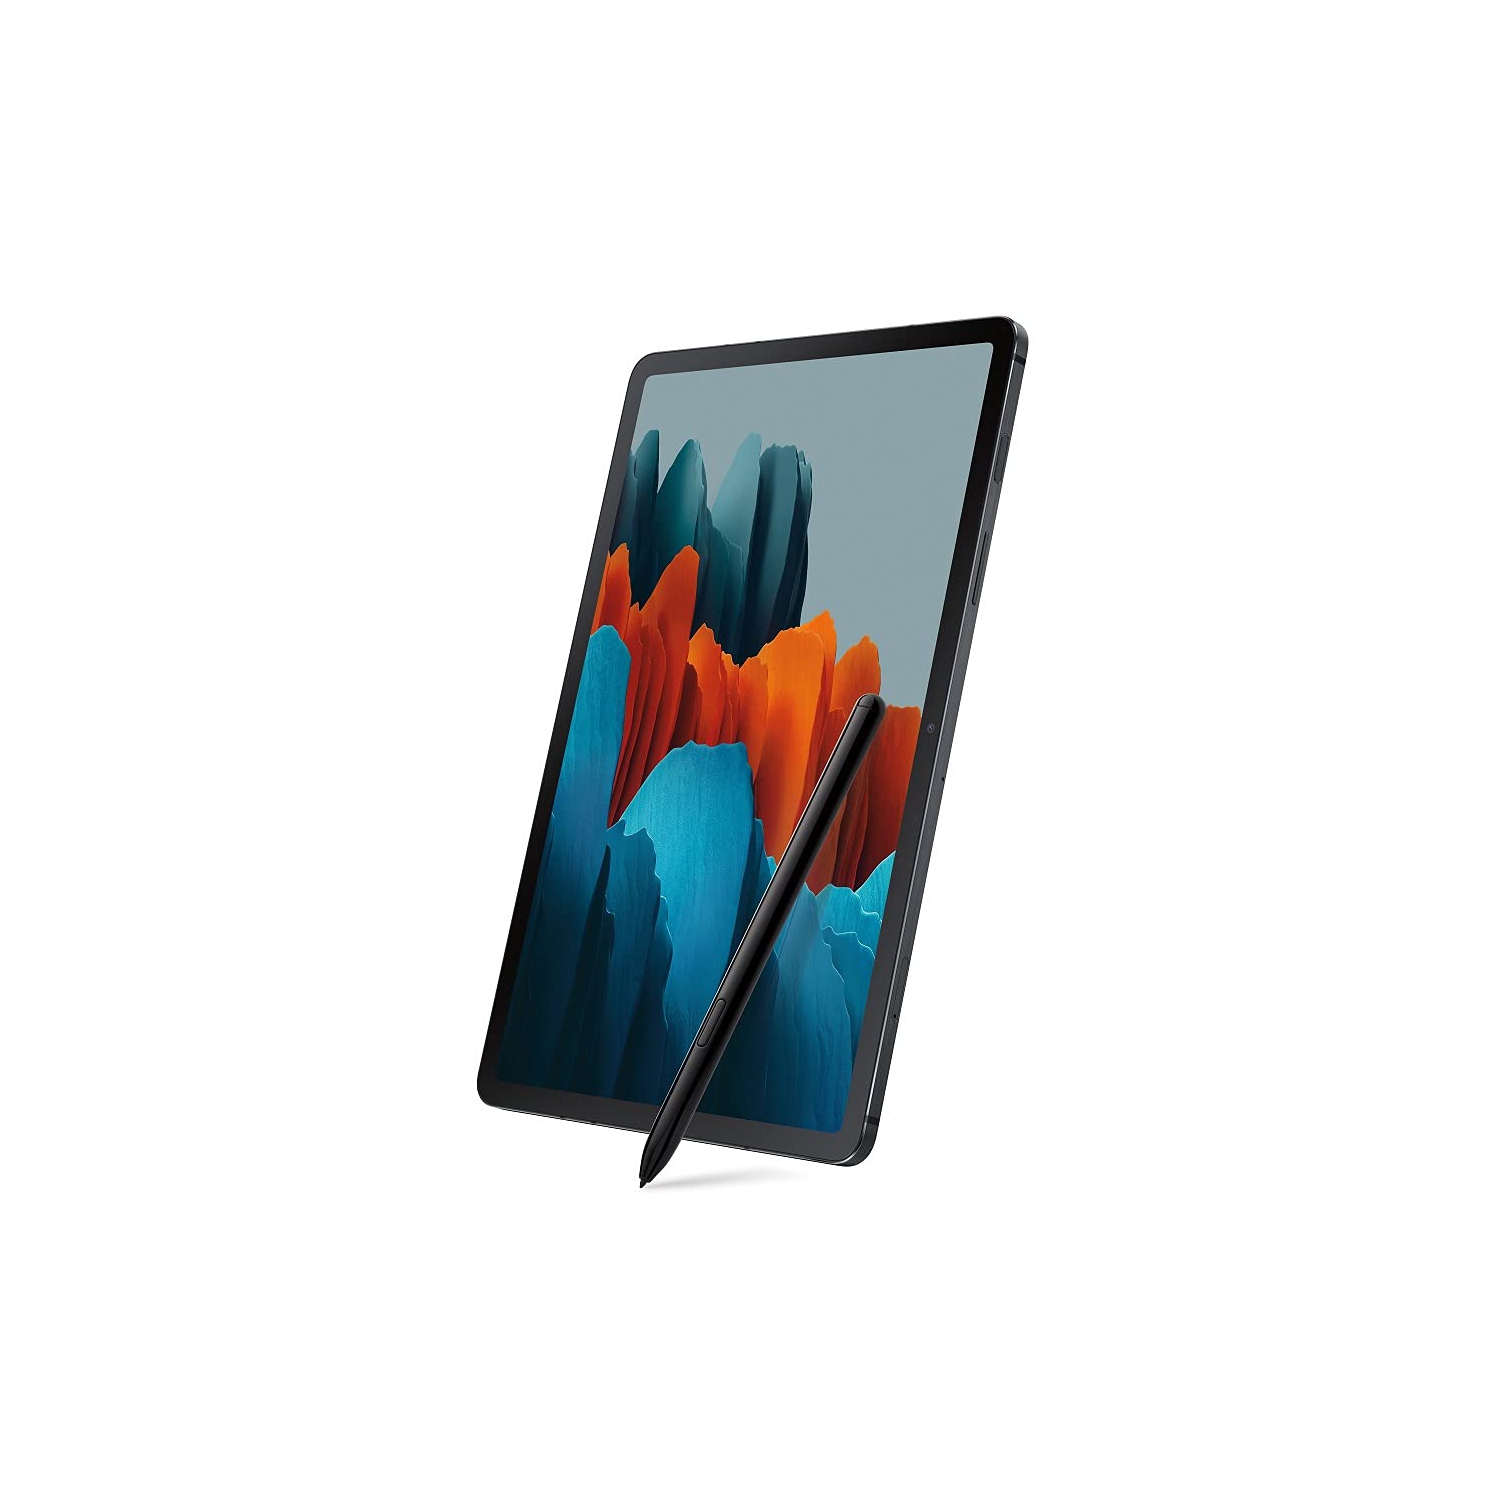 SAMSUNG Galaxy Tab S7 Wi-Fi, Mystic Black - 128 GB | Best Buy Canada